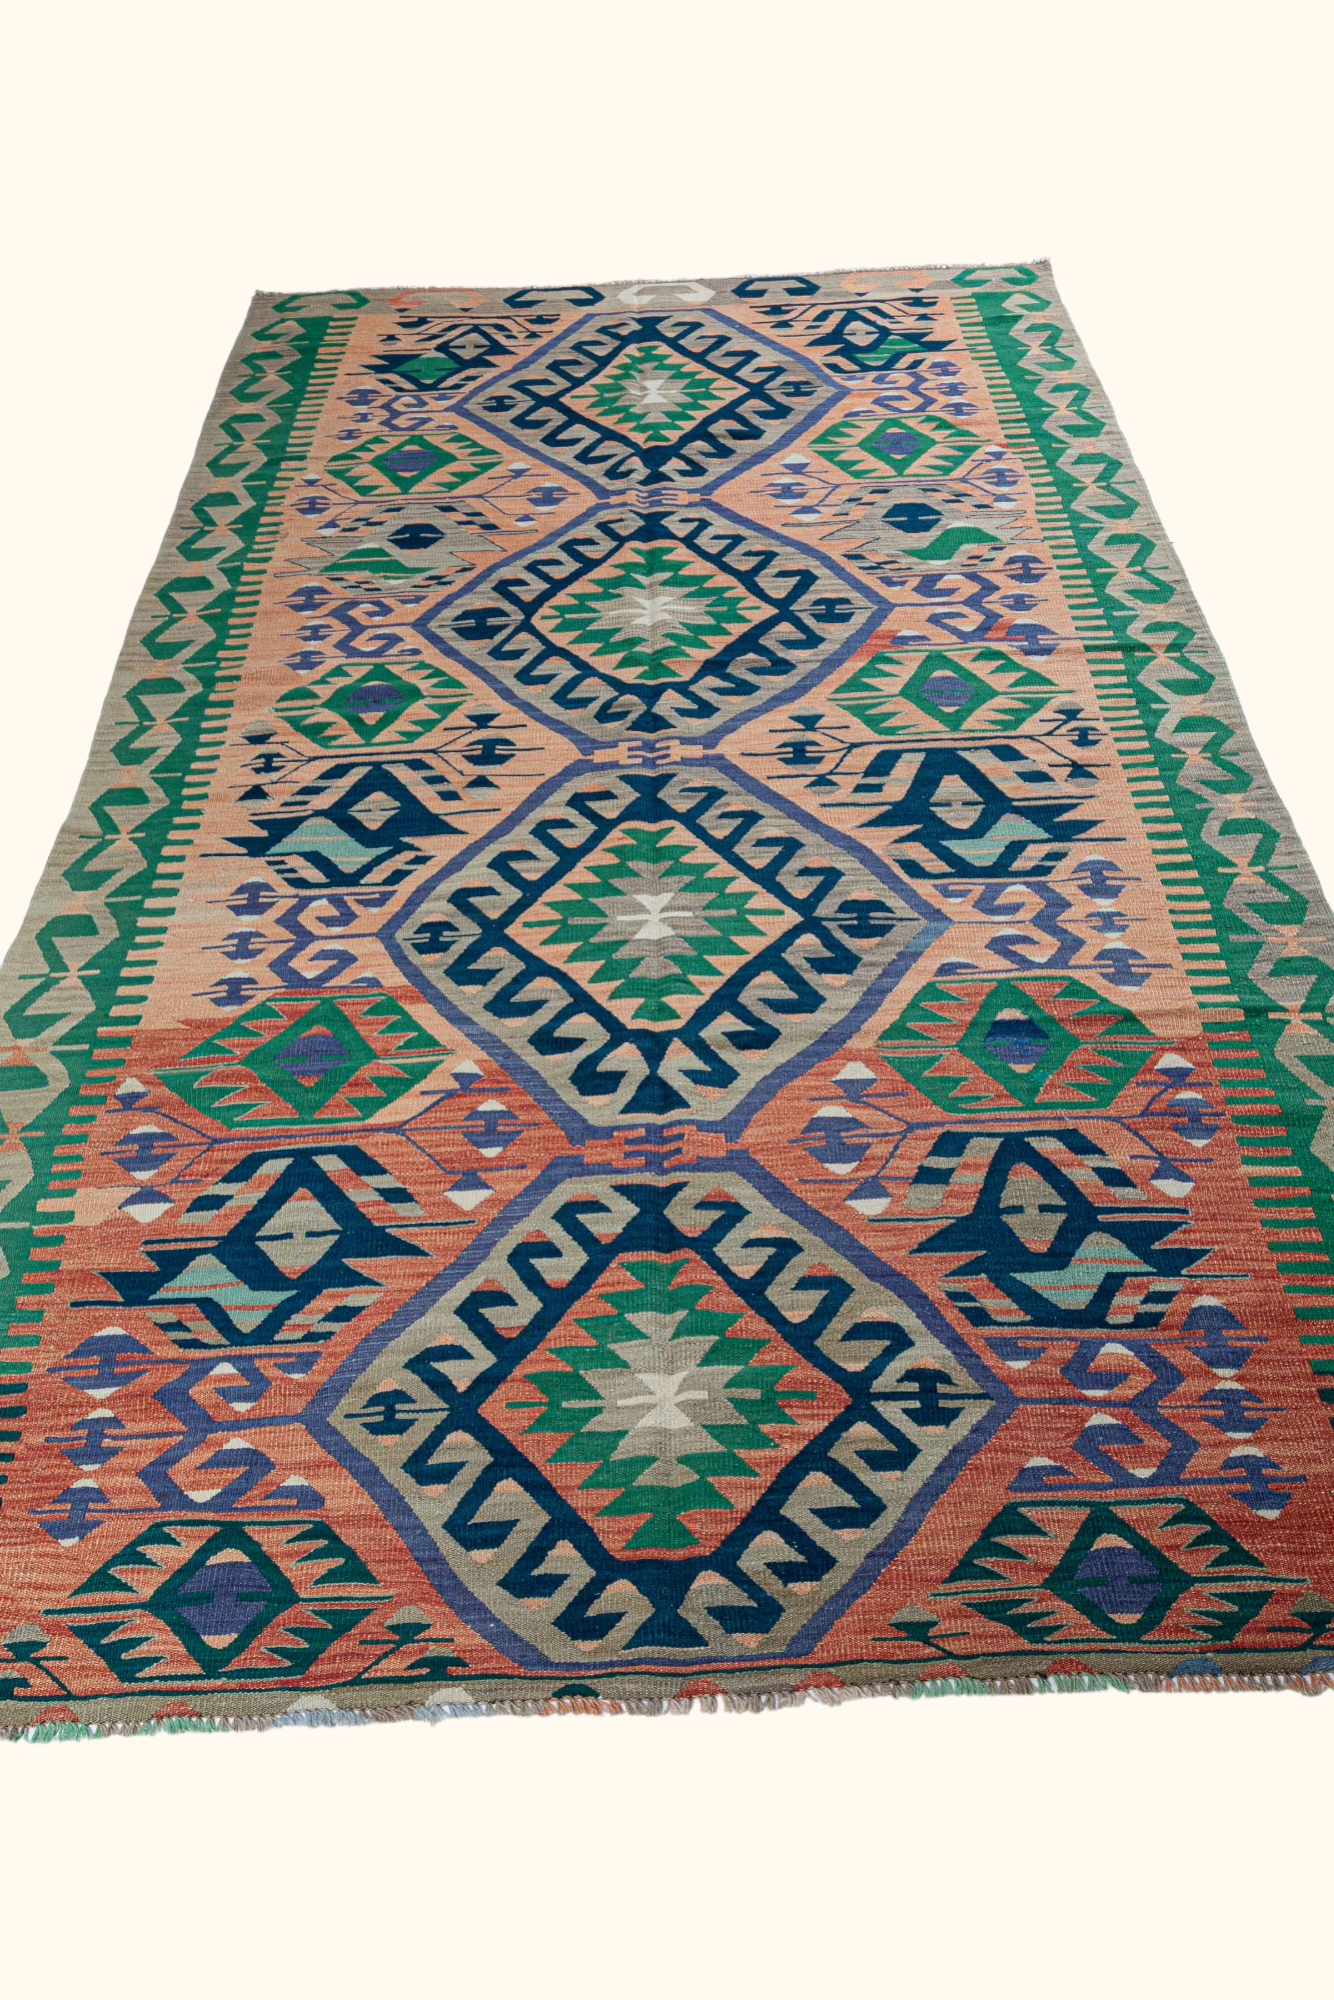 USAK Vintage kilim 335x175cm